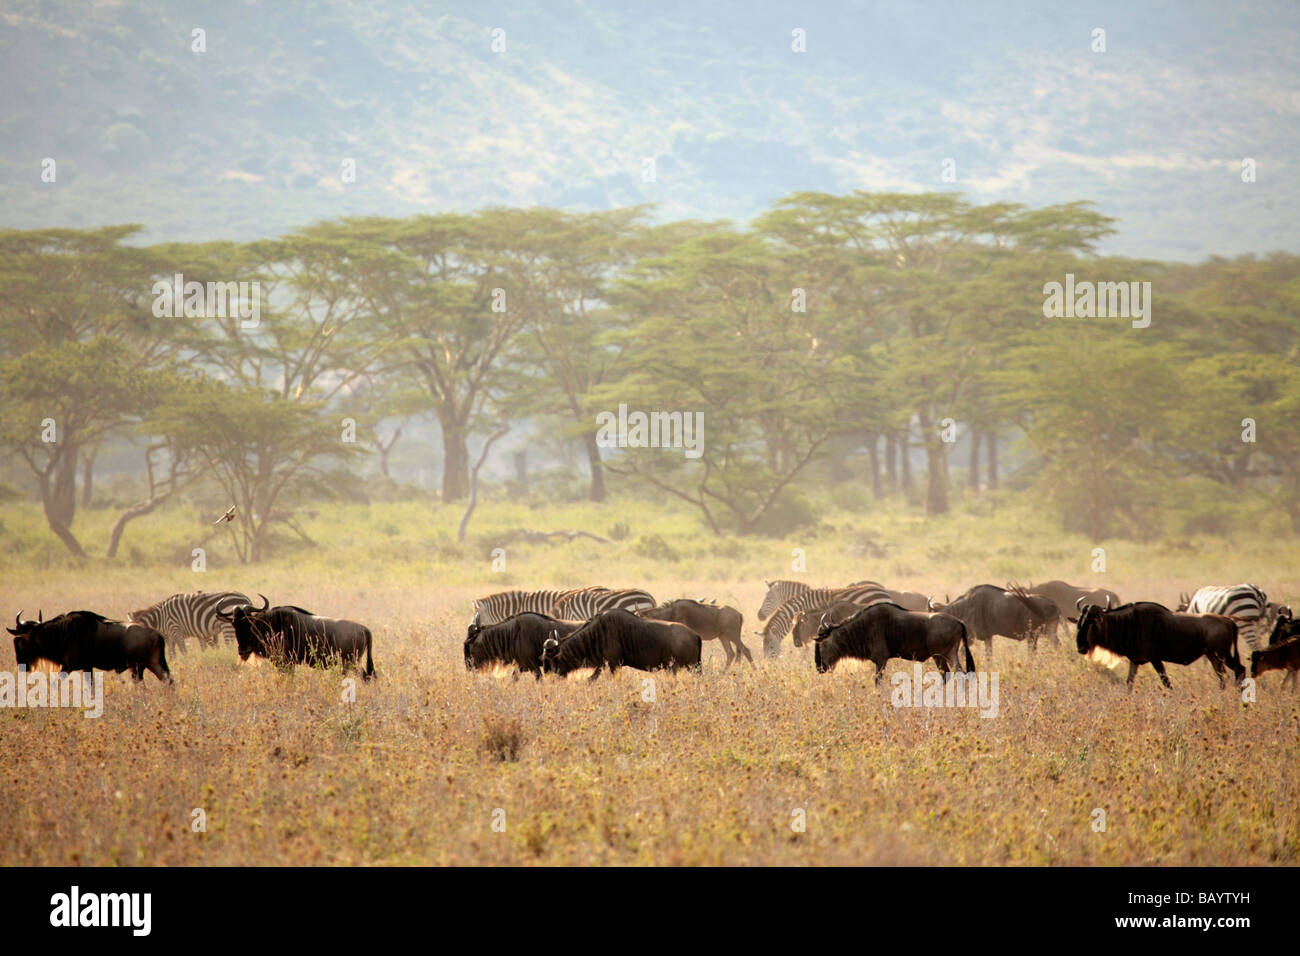 Des gnous et zèbres sur les plaines du Serengeti pendant la migration annuelle vers le Masai Mara Banque D'Images